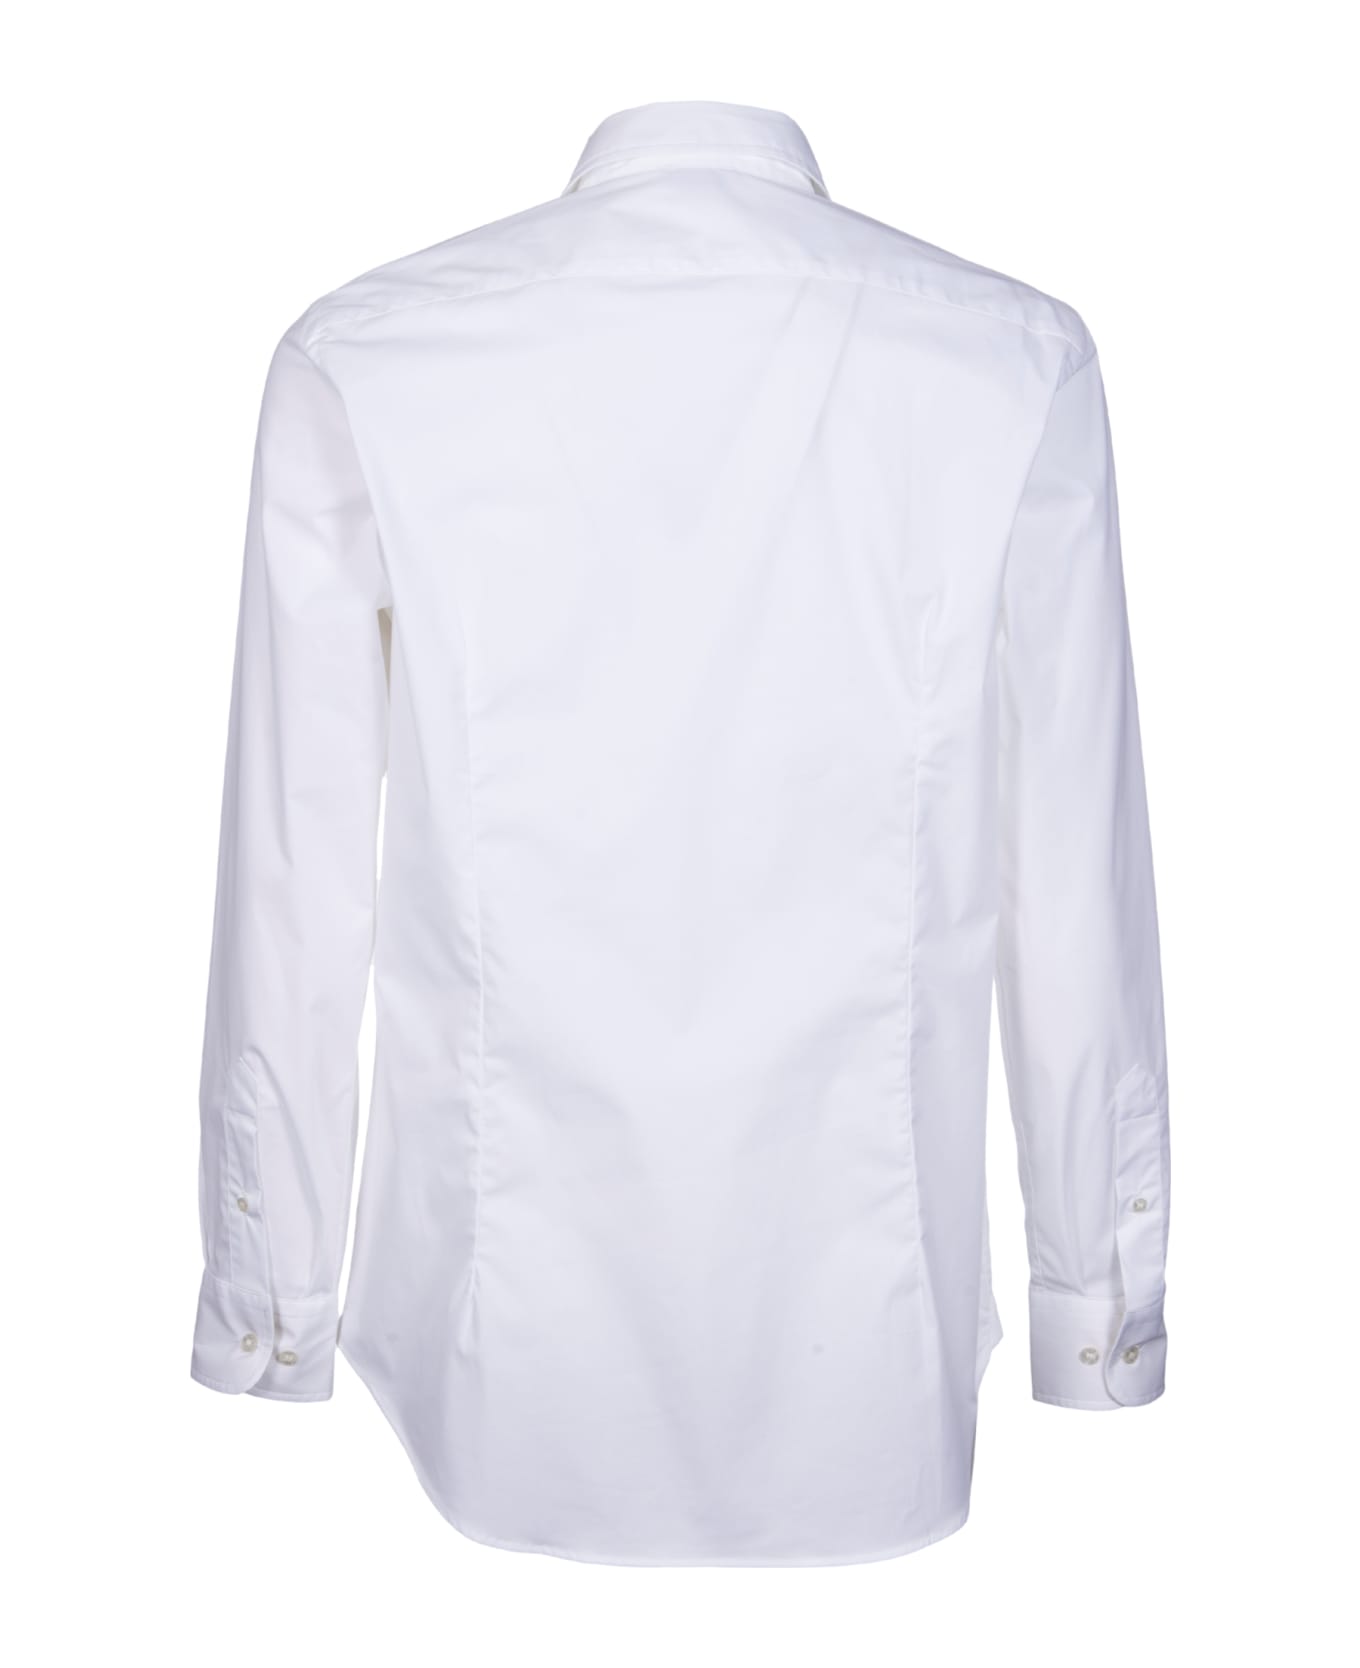 Etro Shirts - Bianco ottico